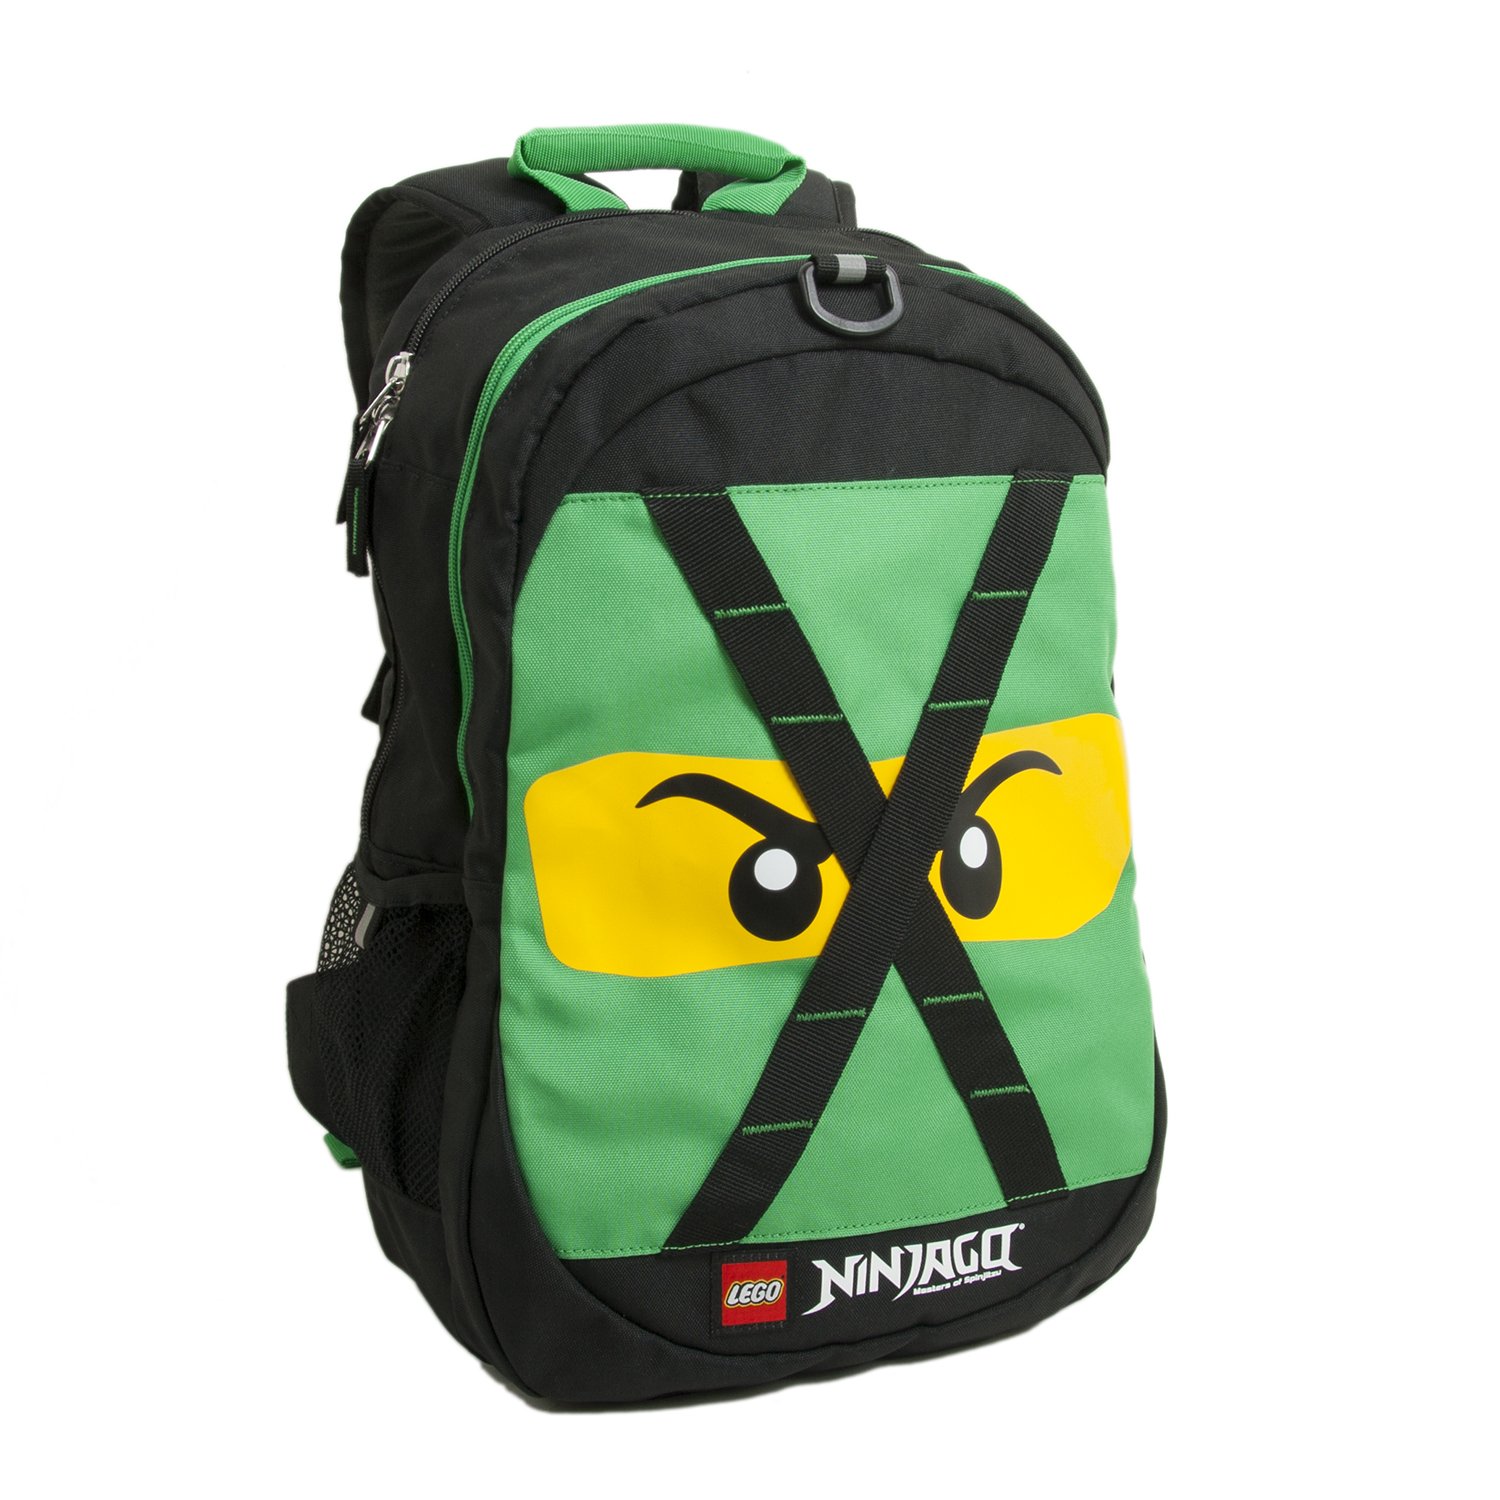 送料無料LEGO NINJAGO Future Kids School Backpack Bookbag for Travel On-the-Go Back to School Boys and Girls with Adj